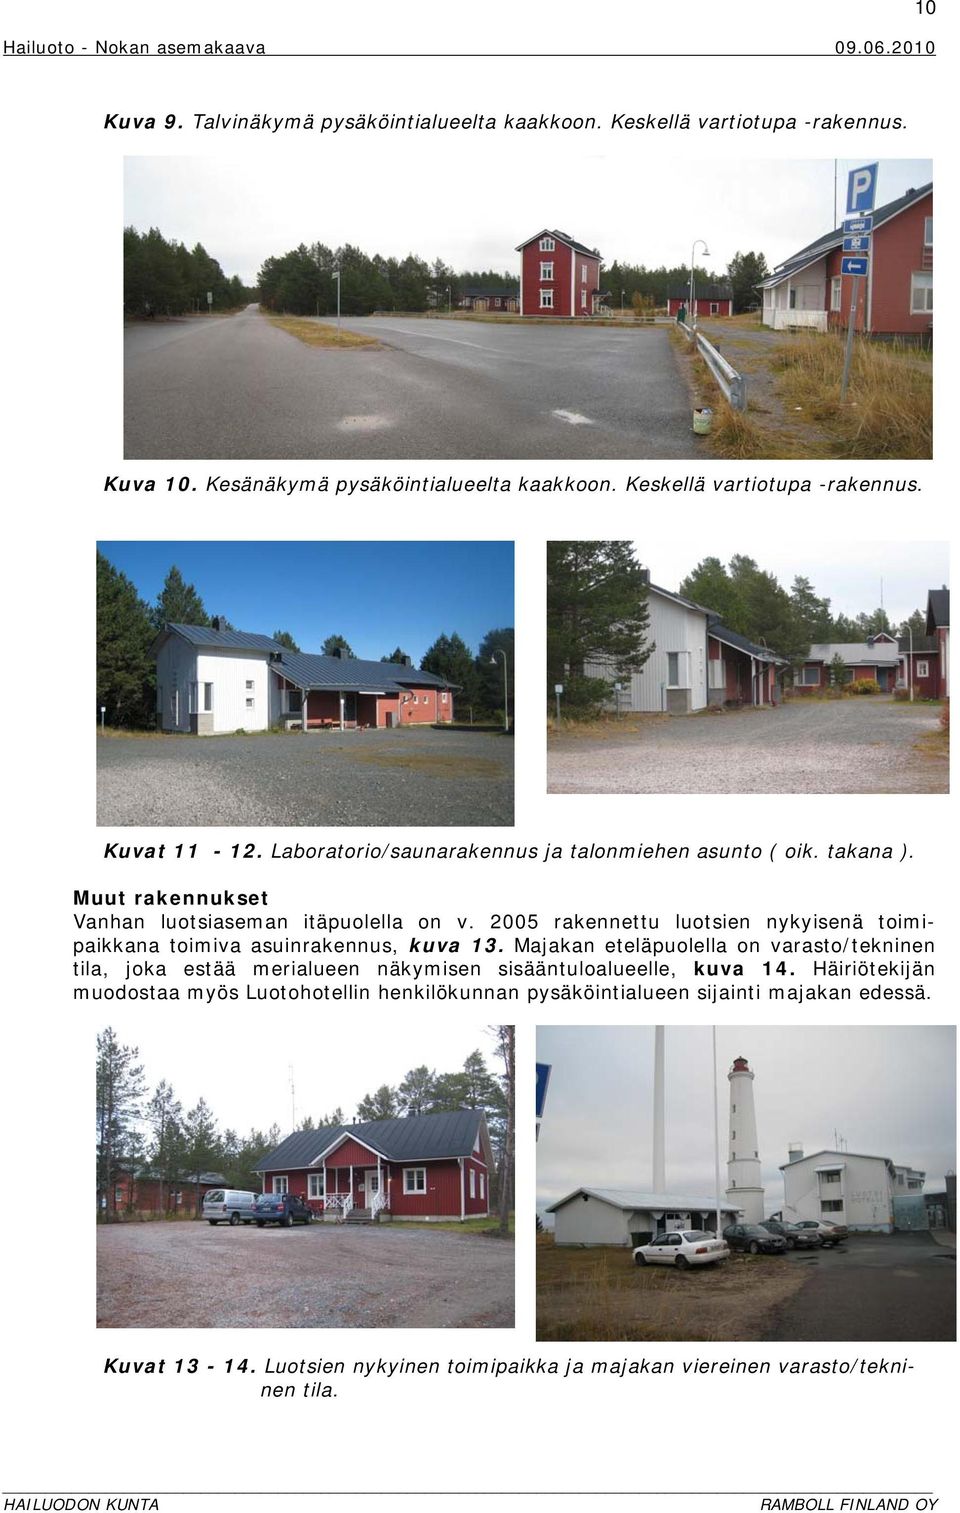 2005 rakennettu luotsien nykyisenä toimipaikkana toimiva asuinrakennus, kuva 13.